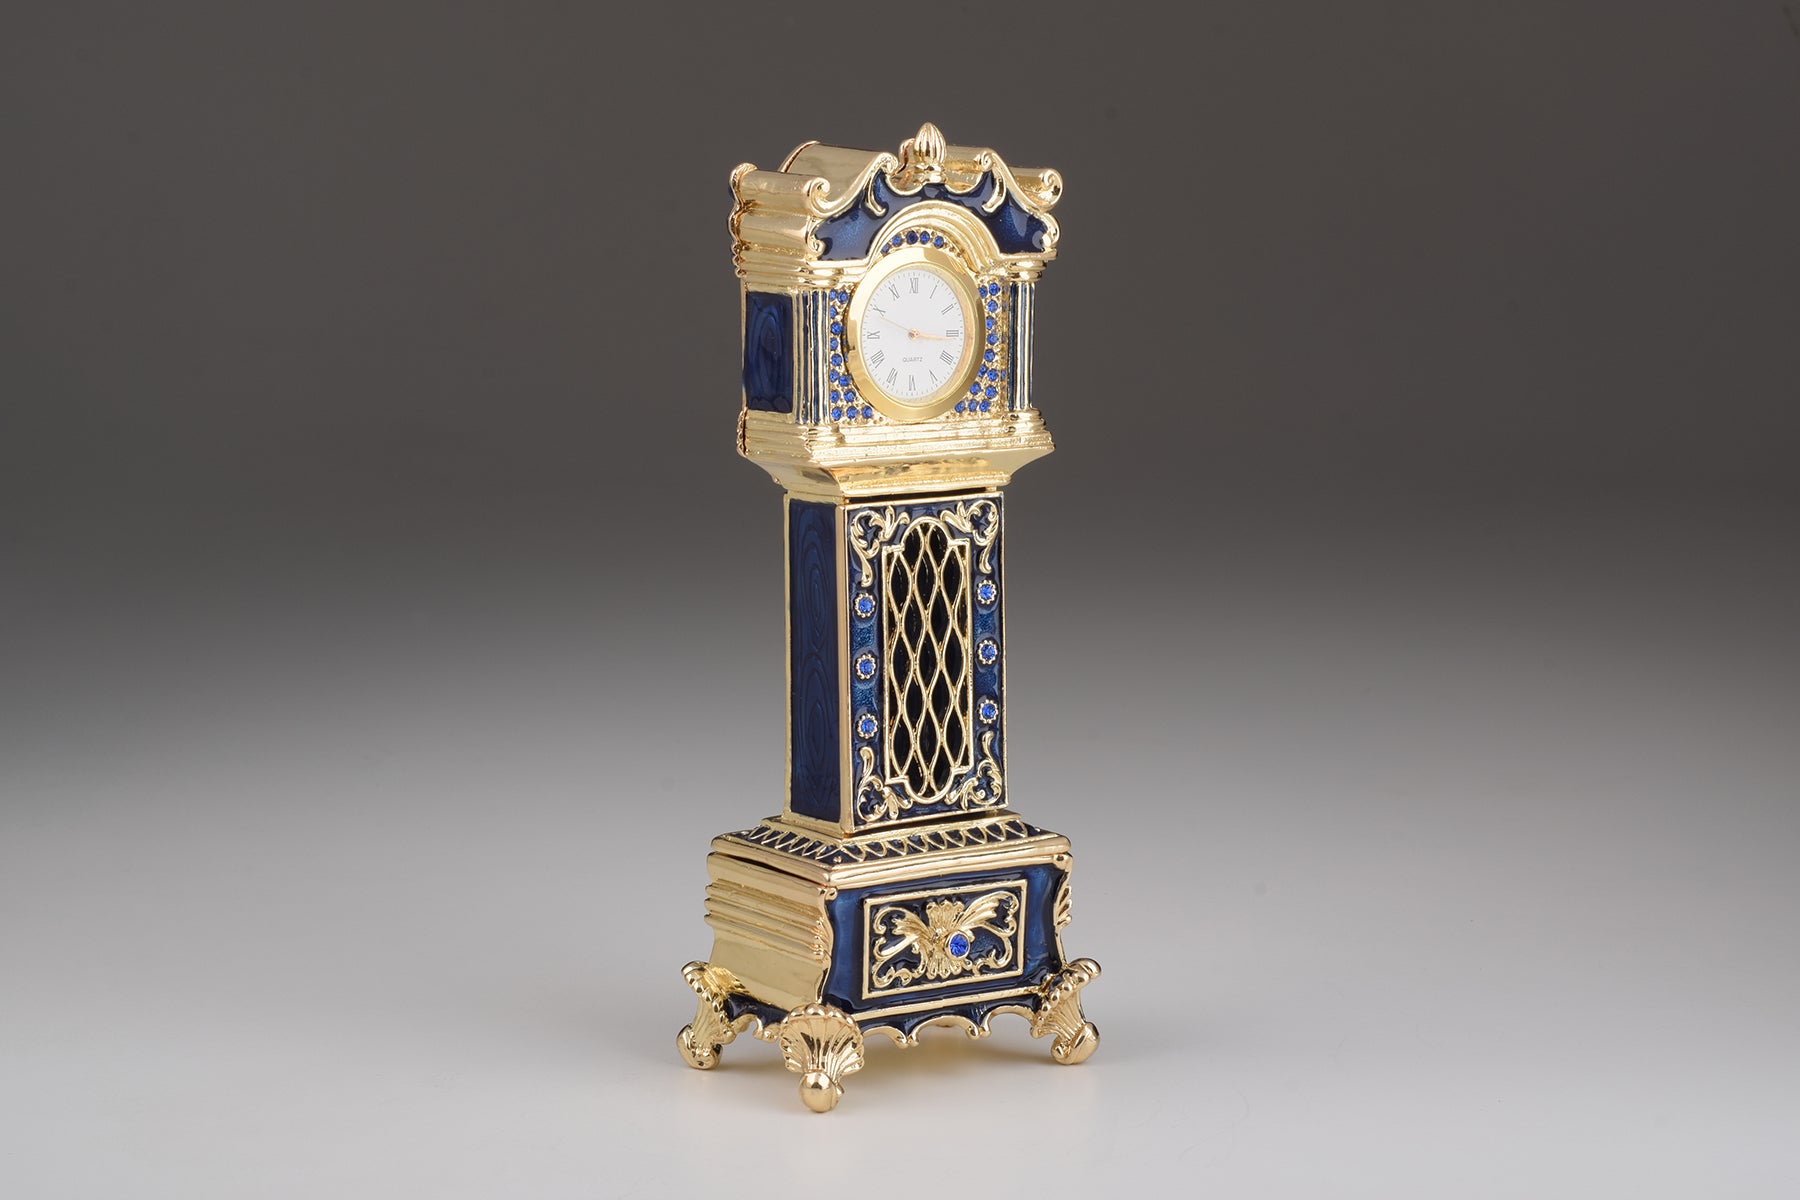 Big Ben Clock Trinket Box